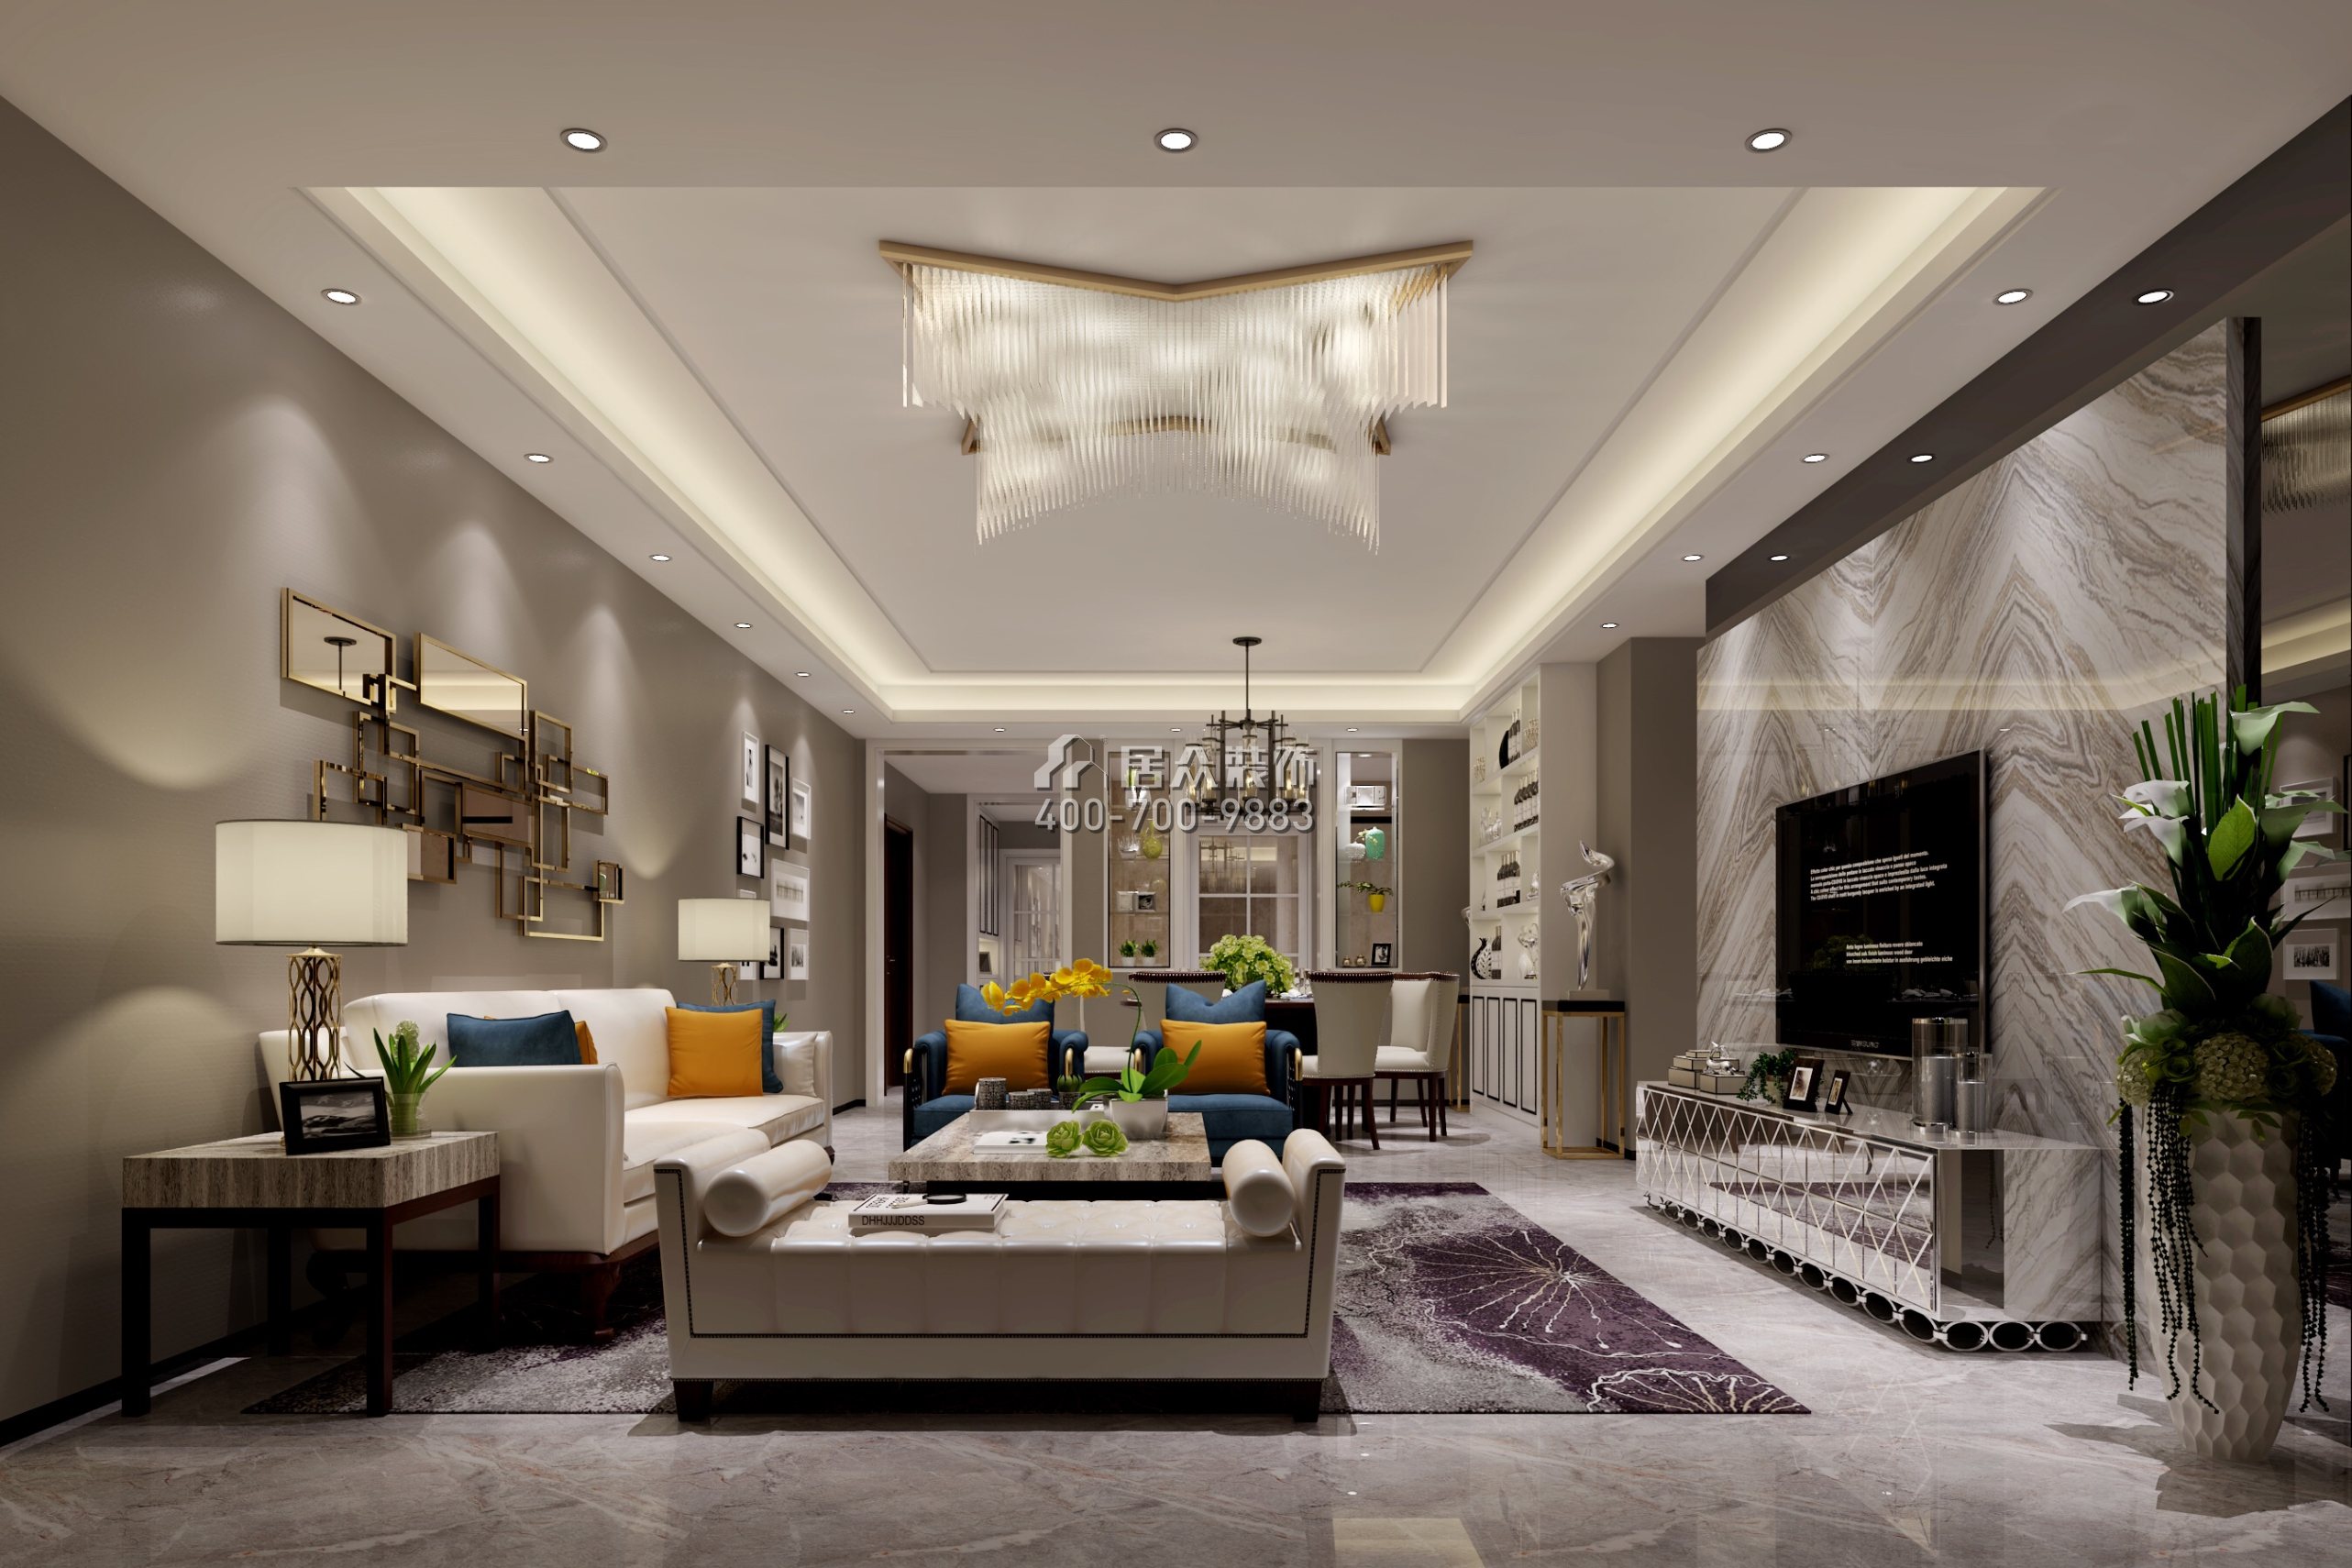 松茂御龍灣雅苑一期170平方米現代簡約風格平層戶型客廳裝修效果圖